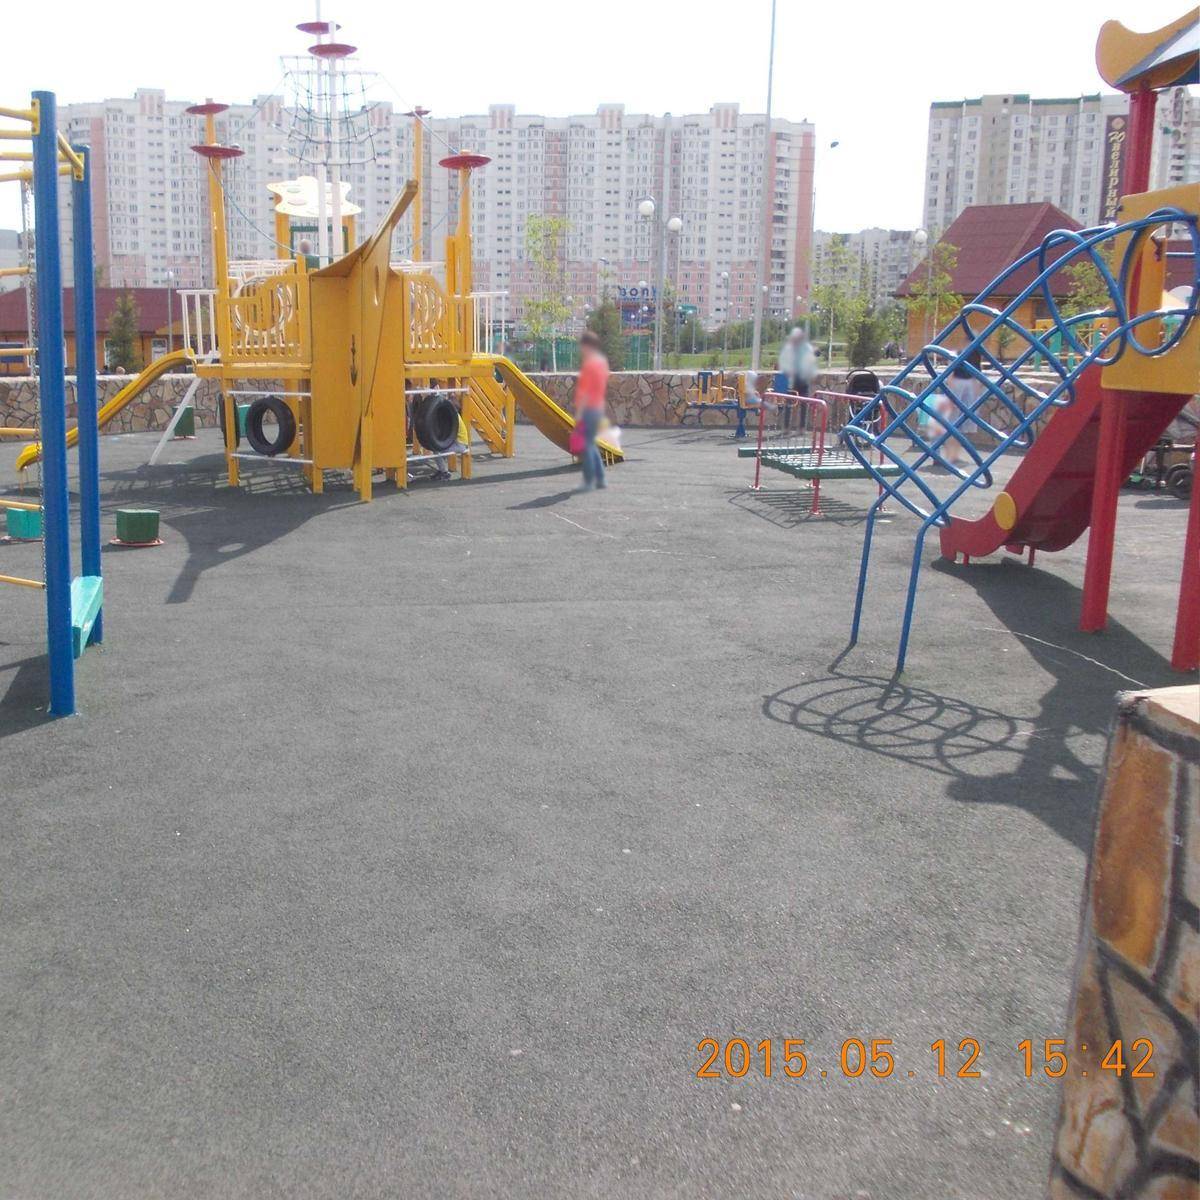 Фото: Площадка детская игровая в парке Имени Артема Боровика